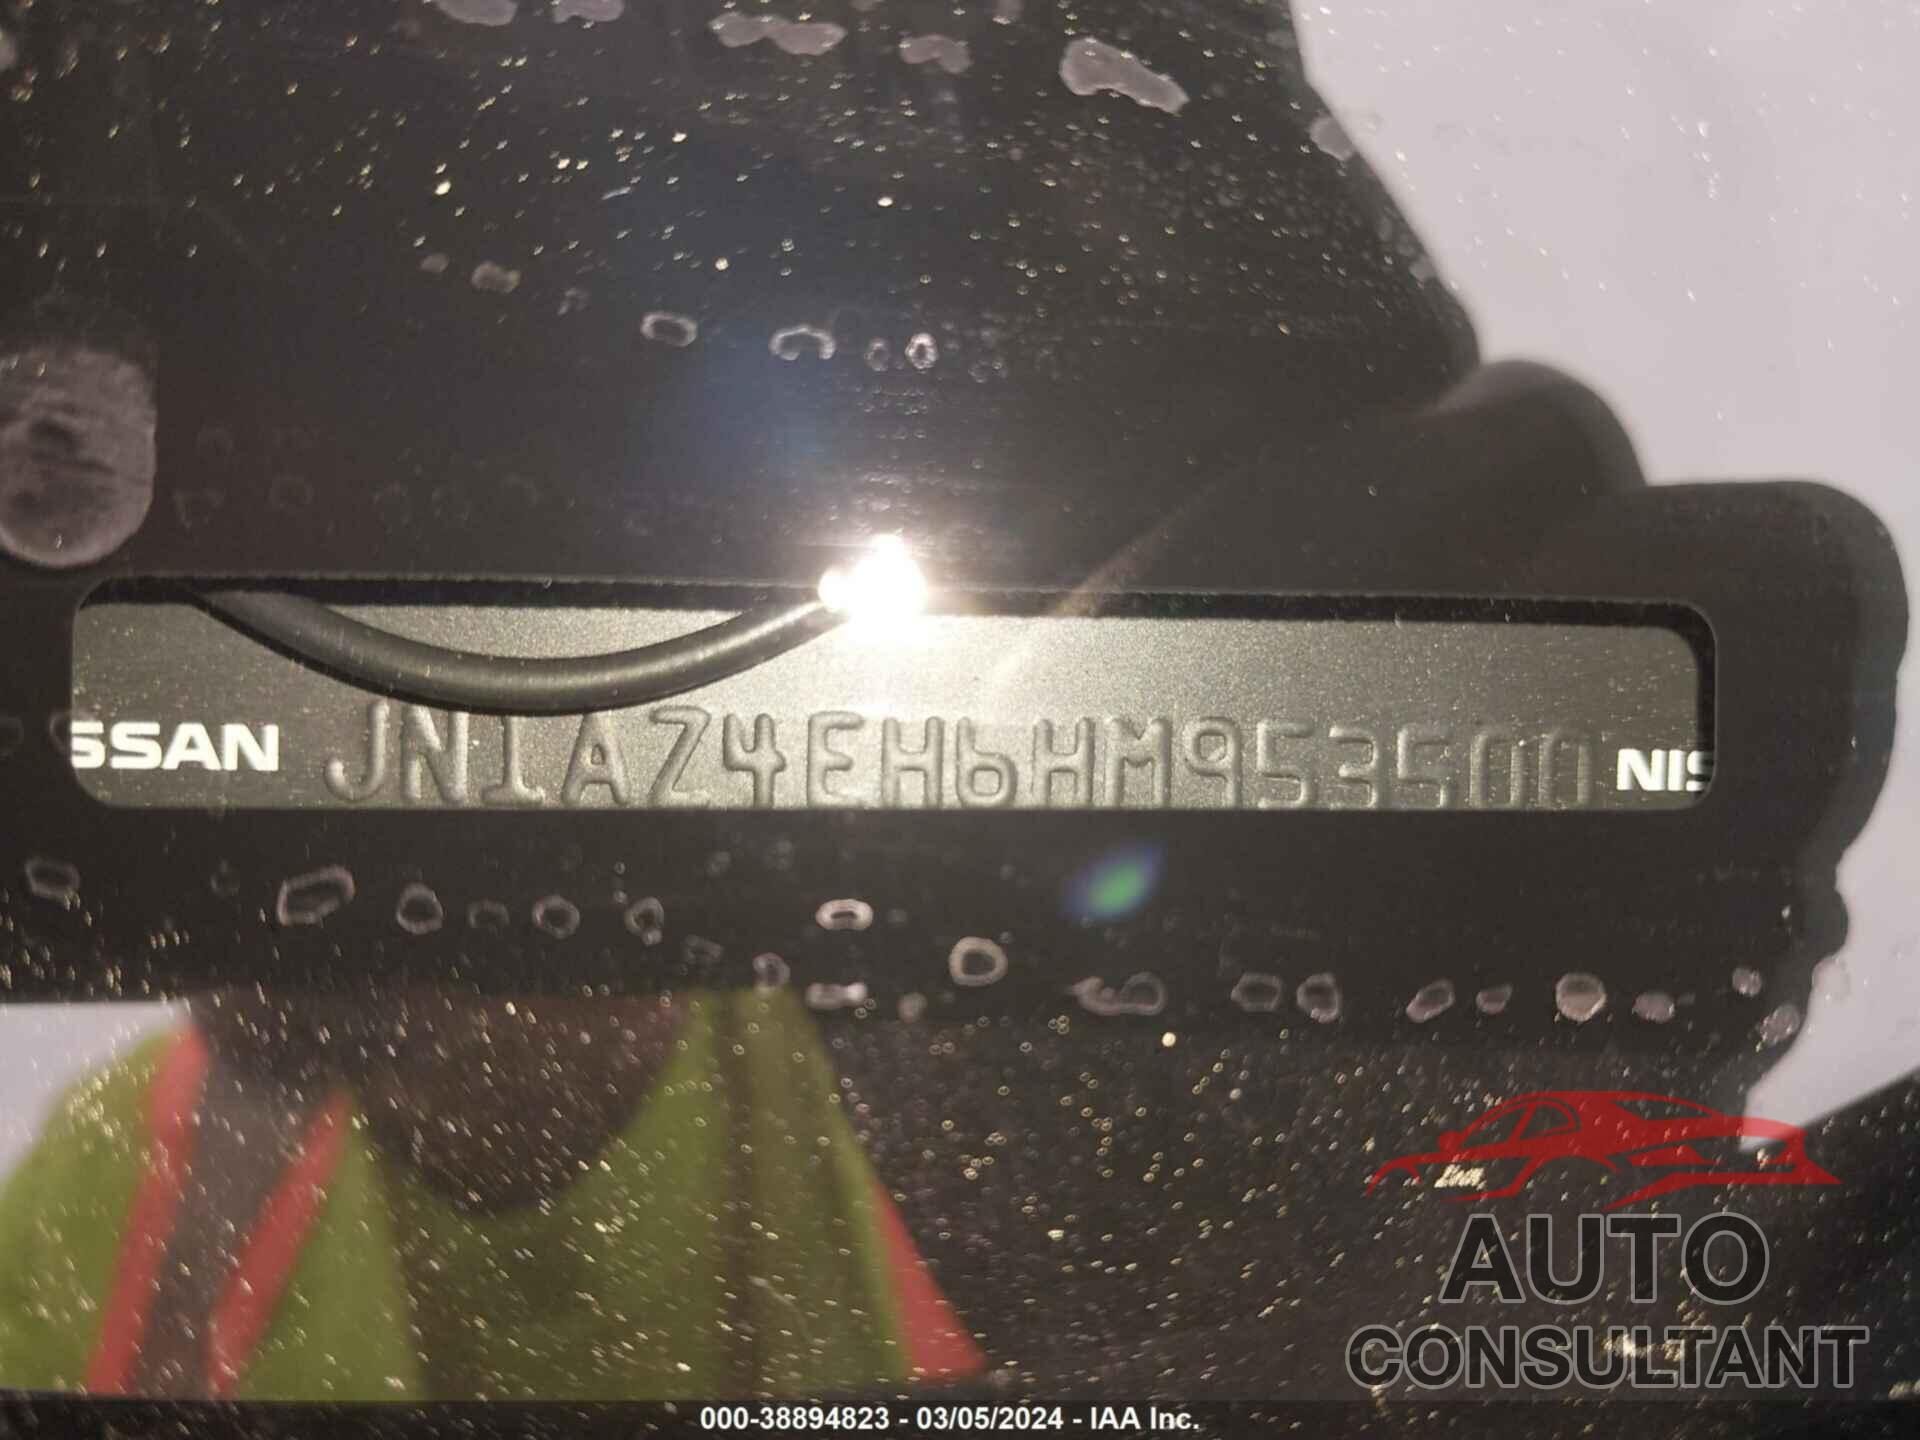 NISSAN 370Z 2017 - JN1AZ4EH6HM953500